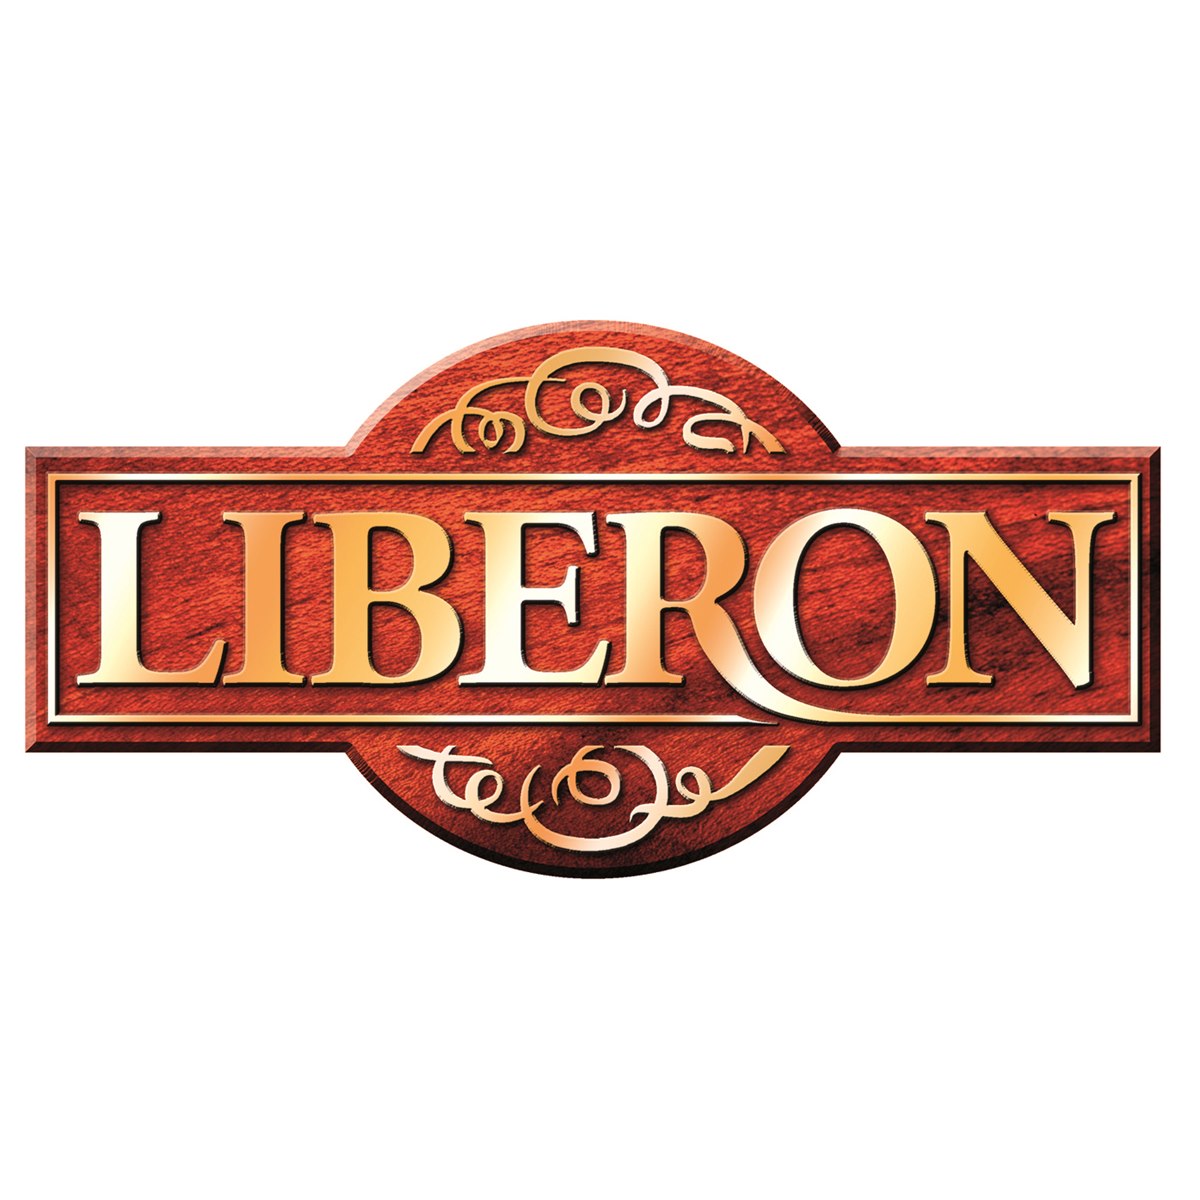 Where to buy Liberon Furniture Wax